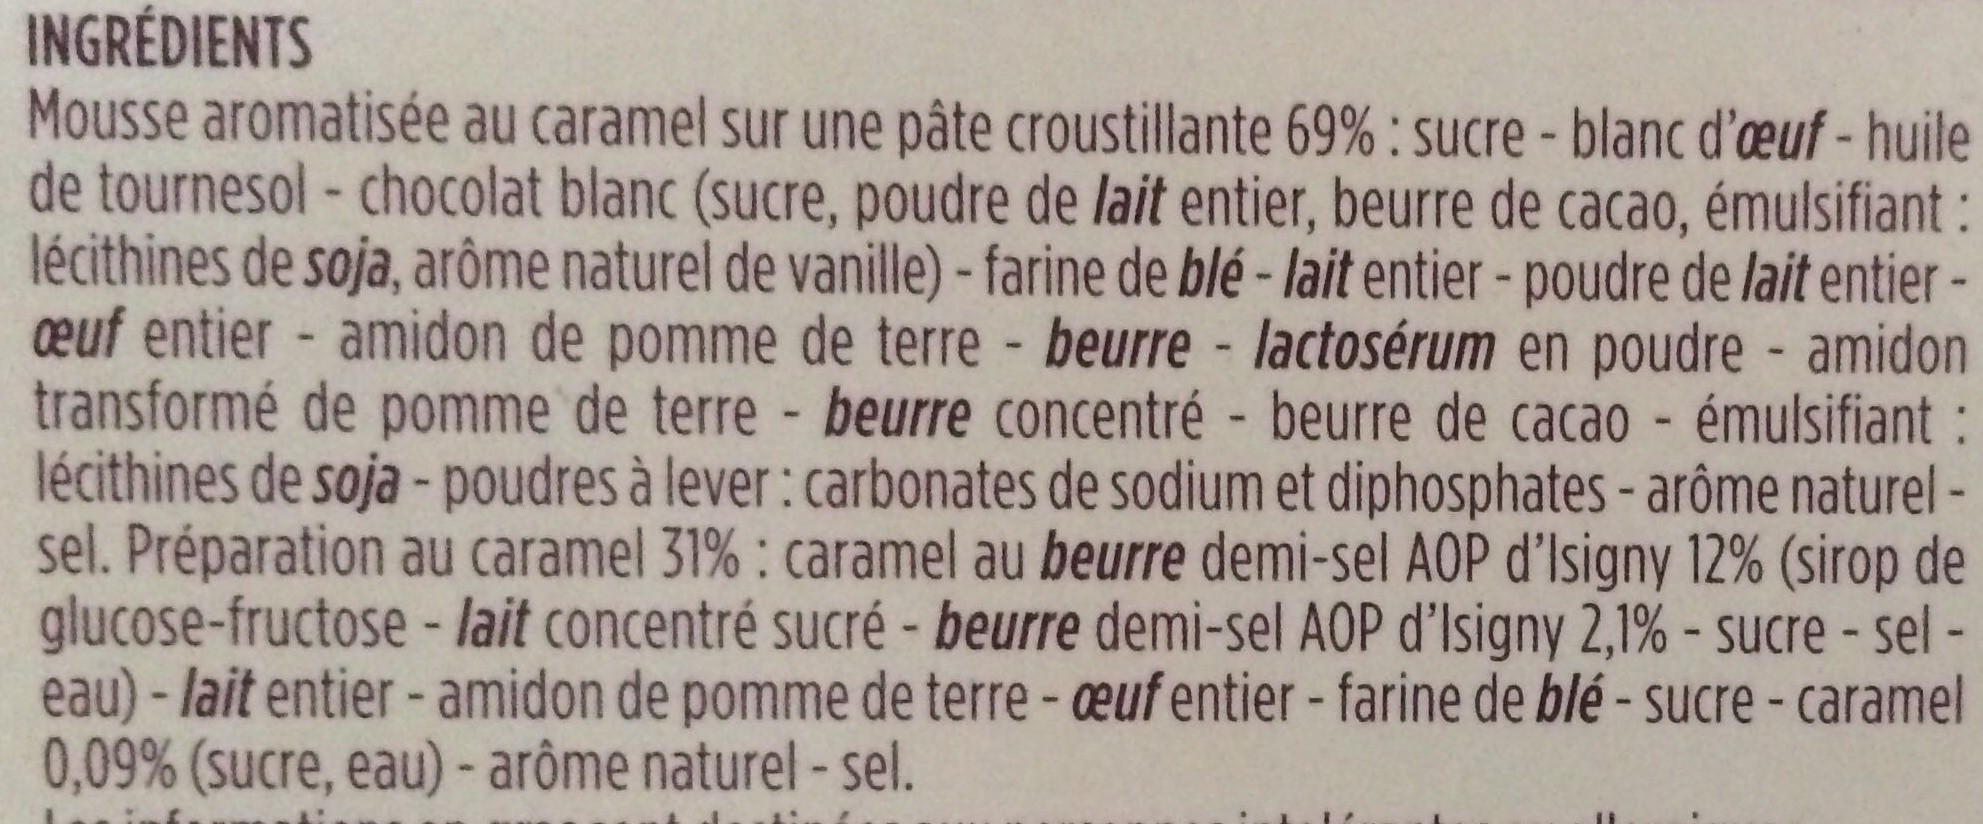 Tartelette Caramel Beurre Demi-Sel AOP d'Isigny - Ingredientes - fr